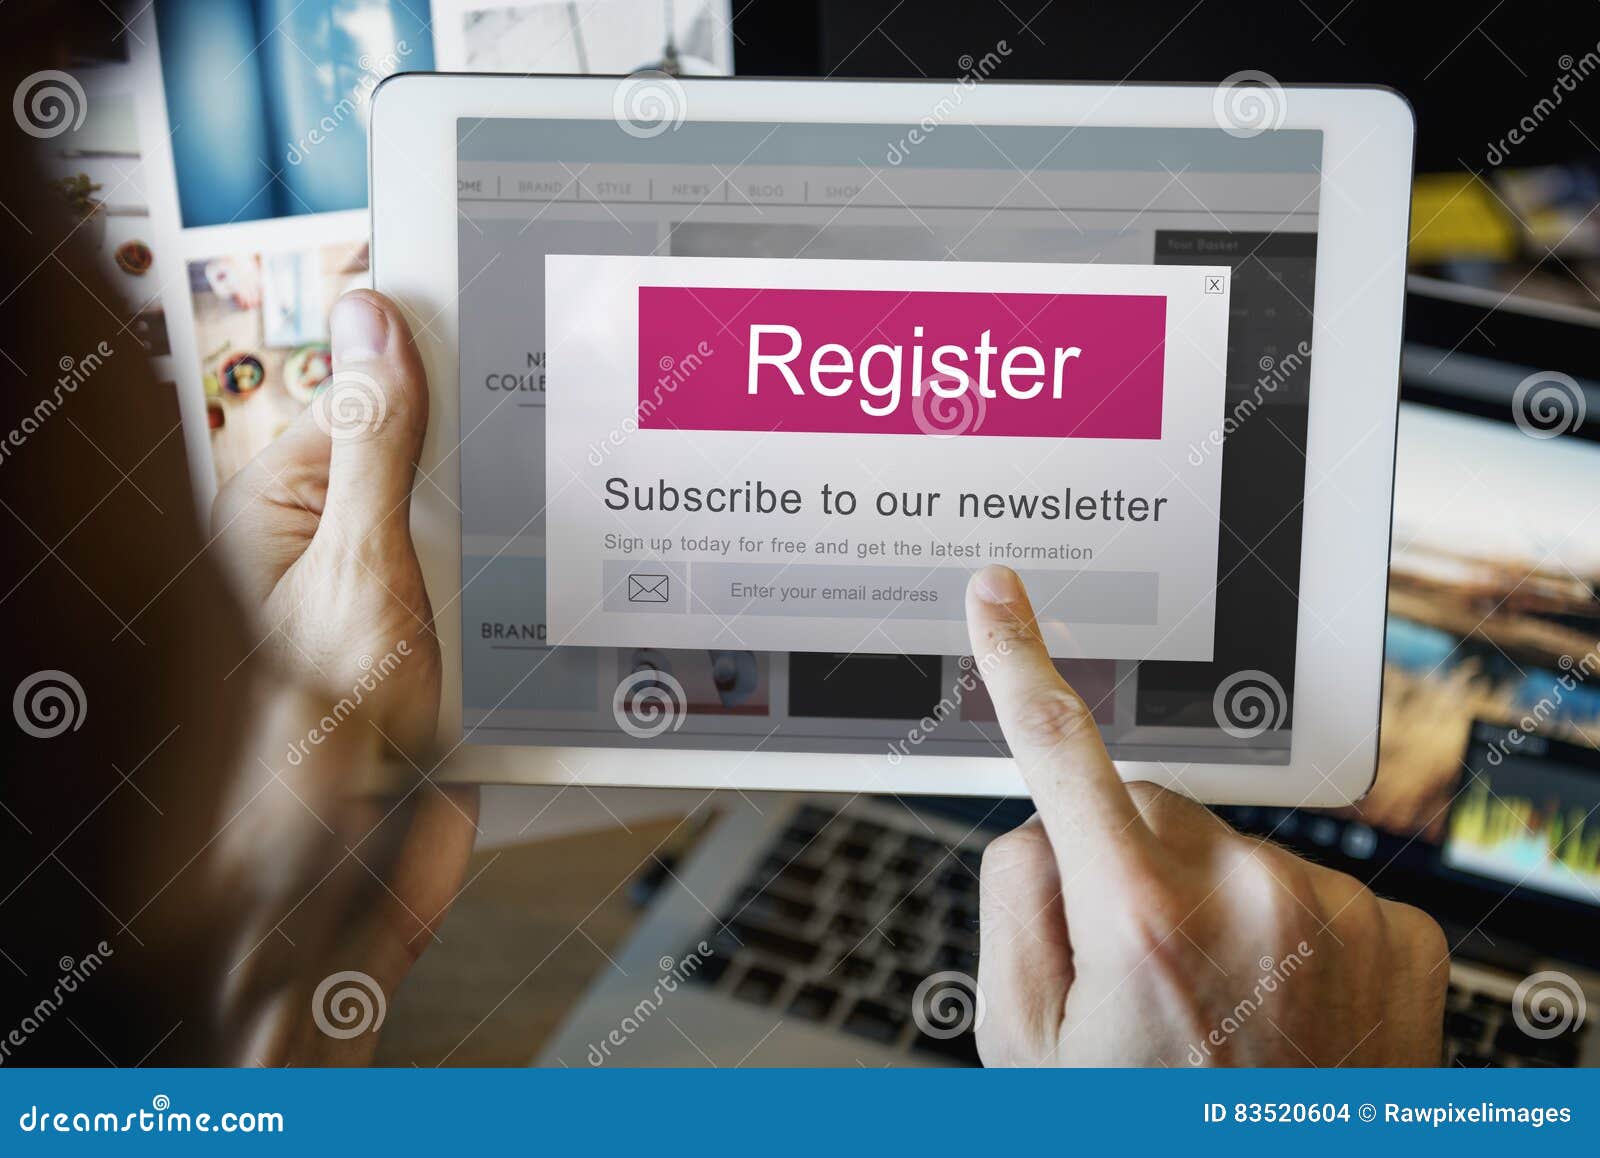 join us register newsletter concept